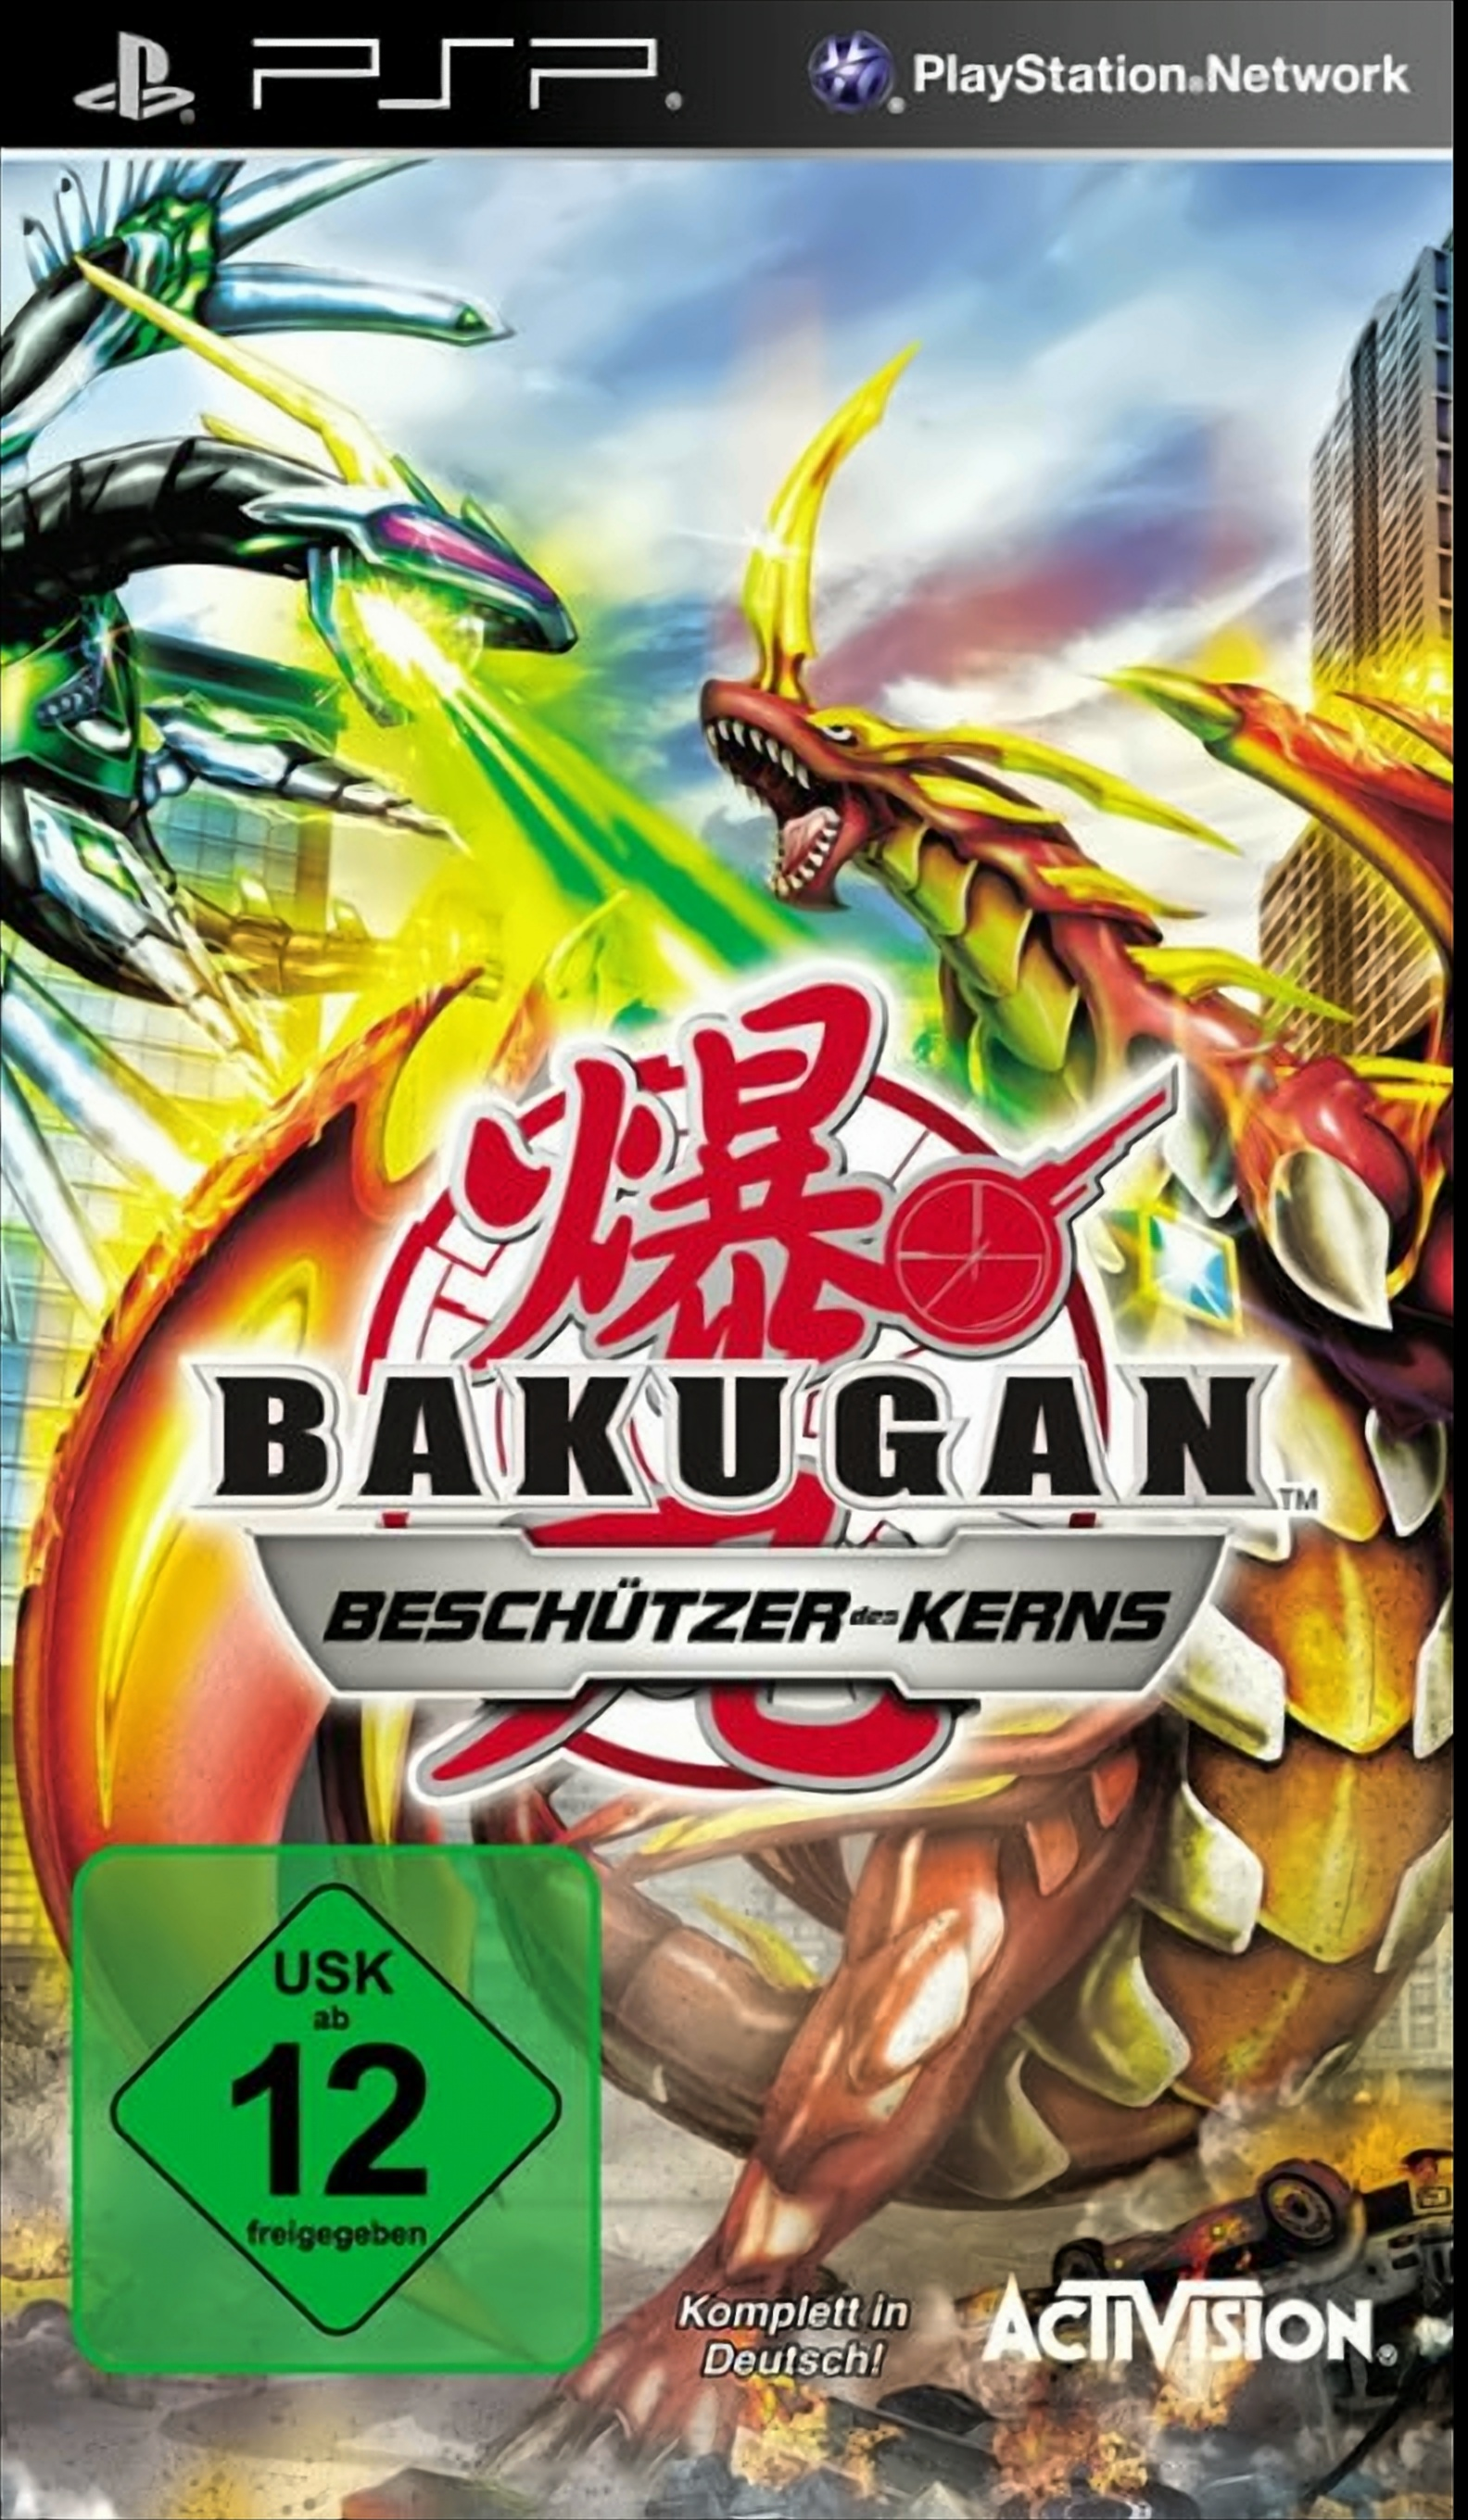 Bakugan Battle - [PSP] Brawlers: des Kerns Beschützer